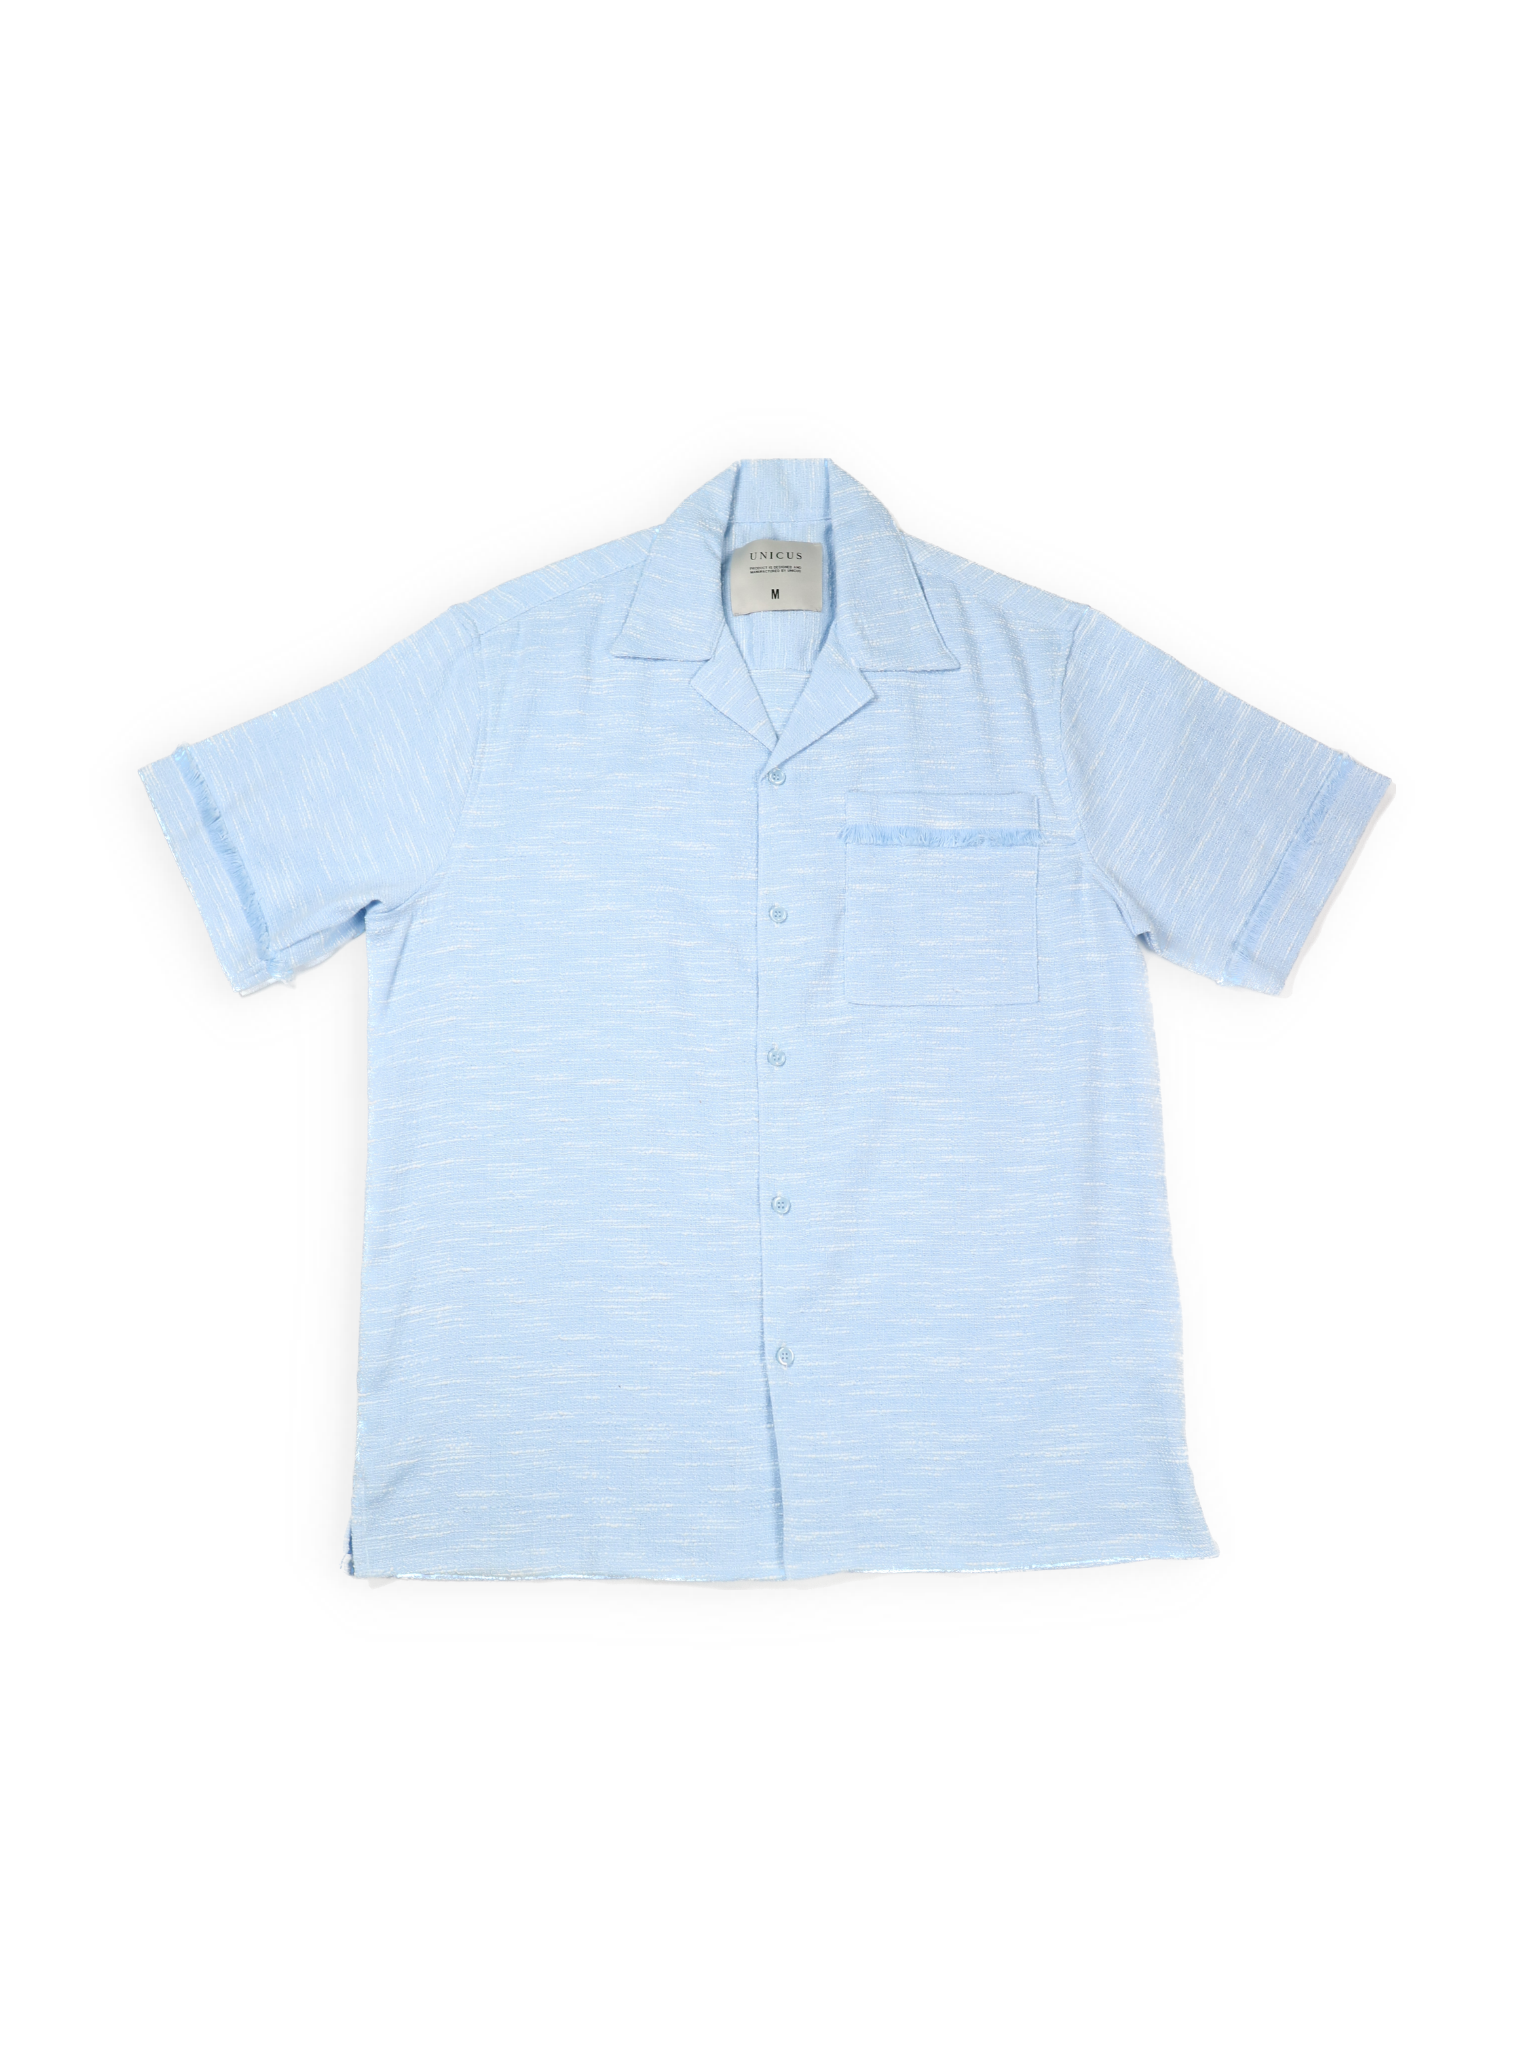 【即納】ヒゲ加工ツイードオープンカラーシャツ BLUE